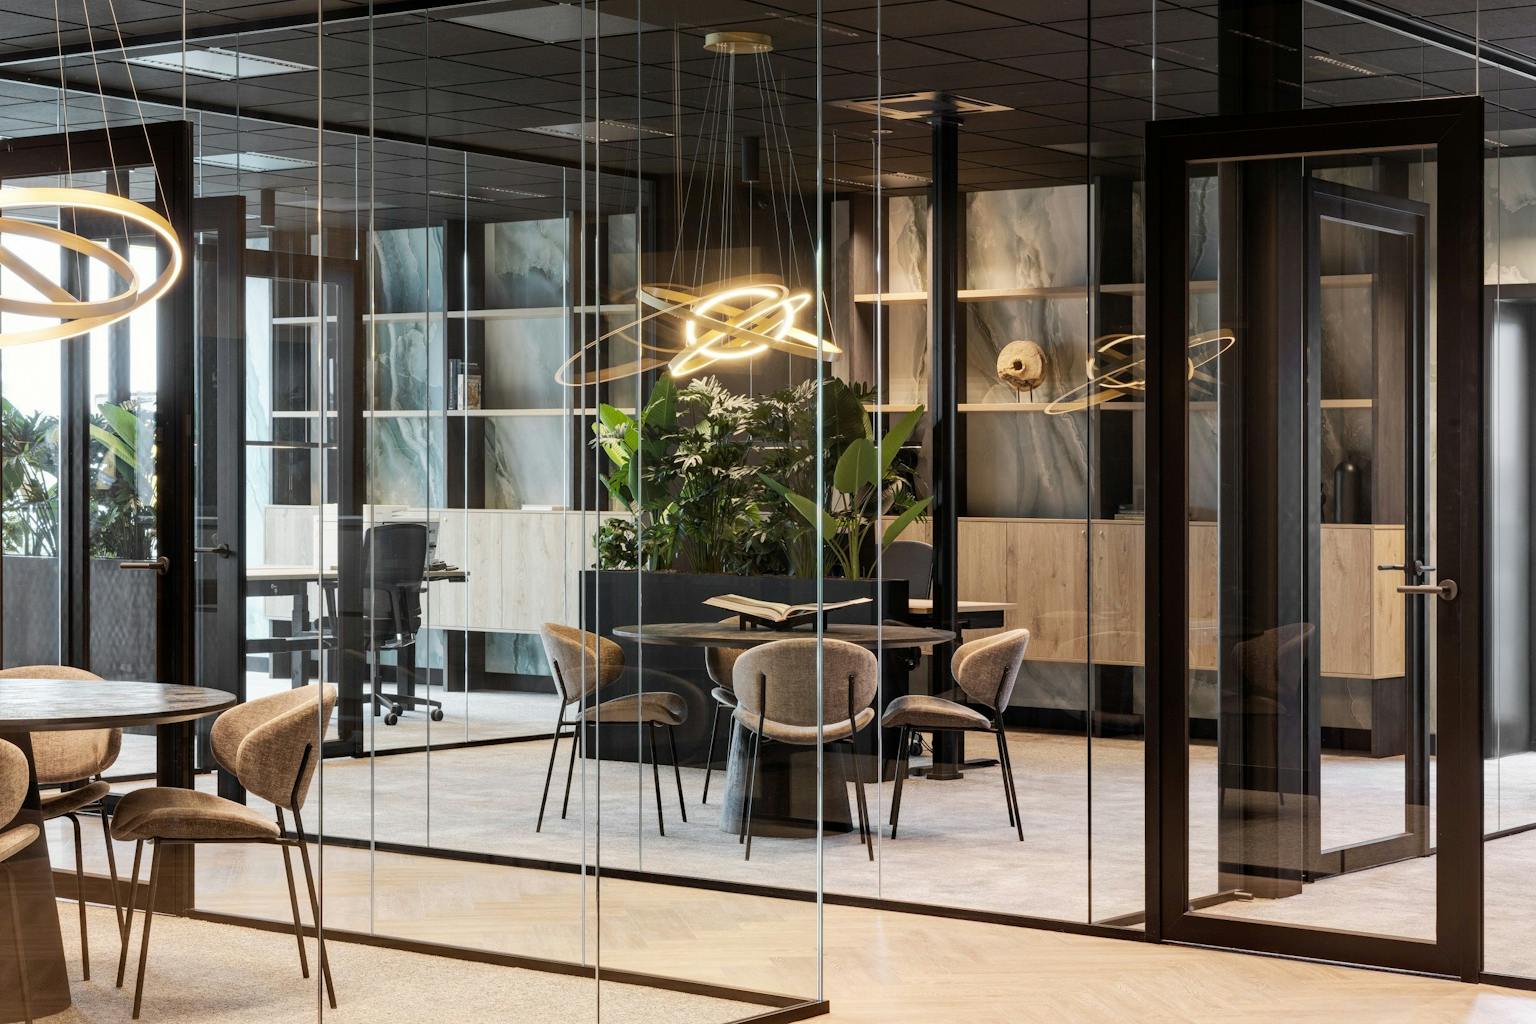 Vergaderruimte met een glazenwand, een ronde vergadertafel en zandkleurige stoeltjes met een designlamp erboven.